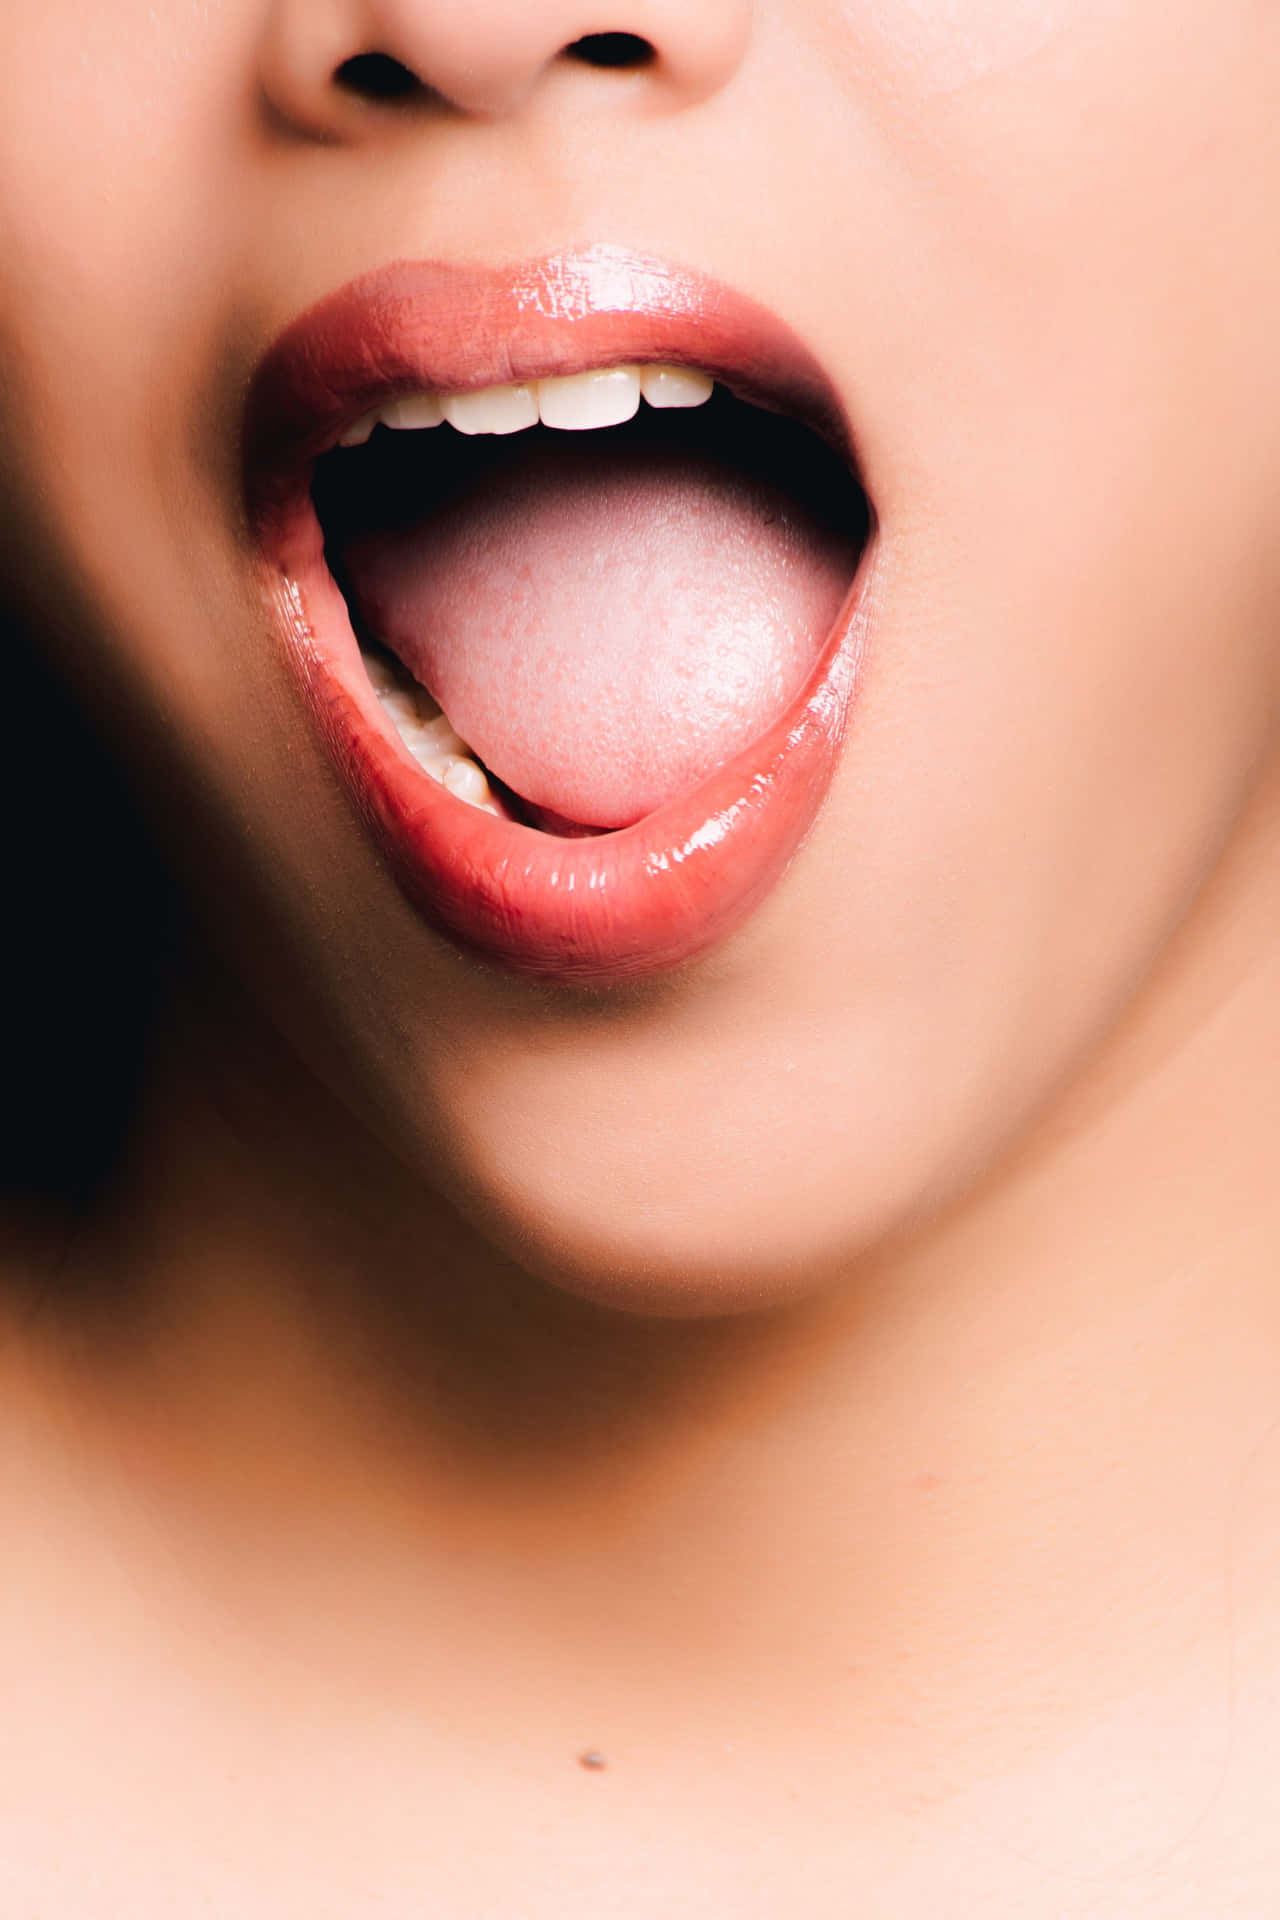 Oral Mouth Woman Wallpaper